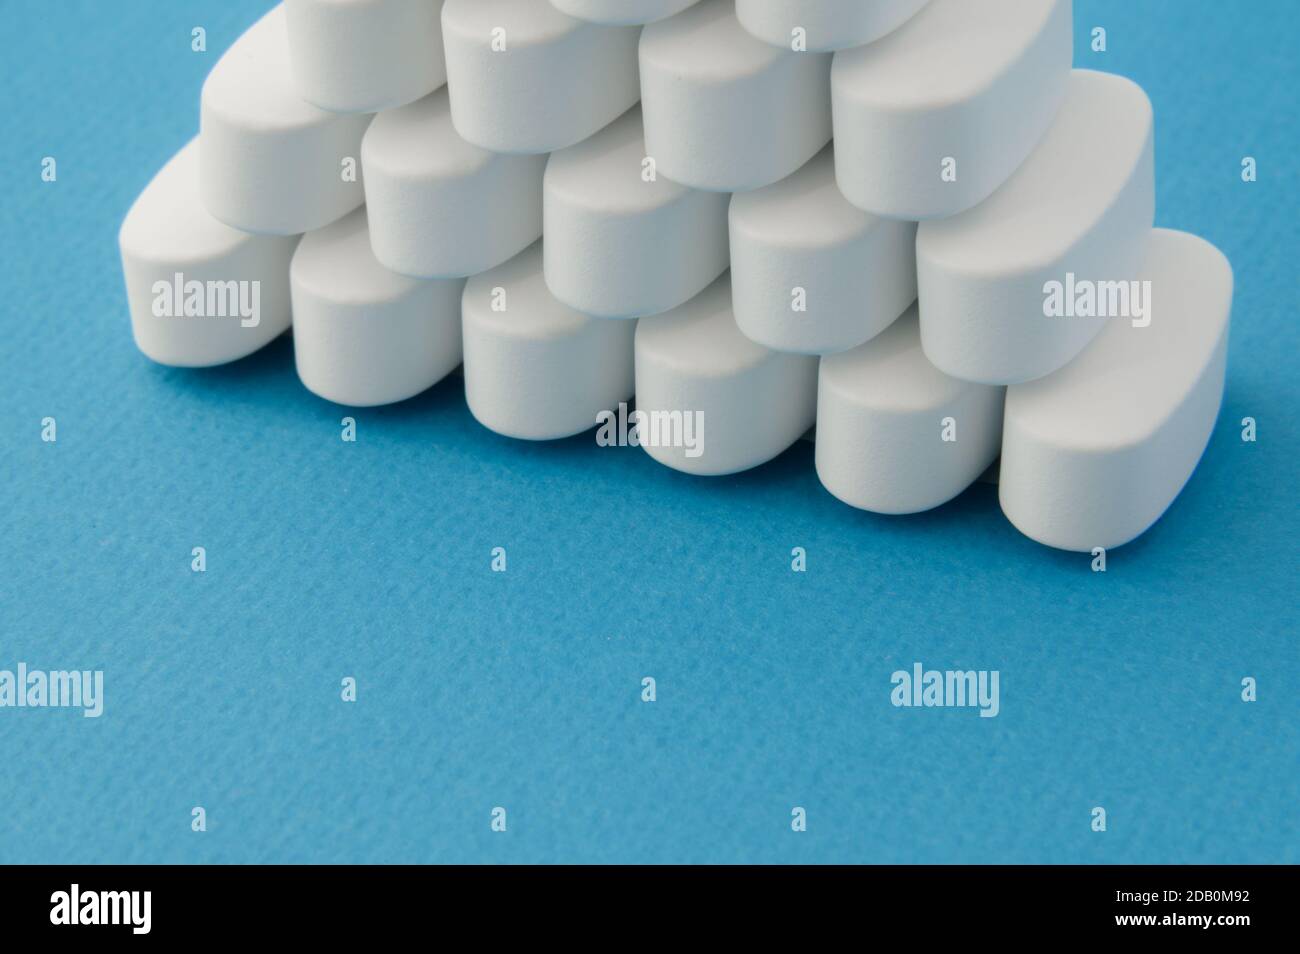 Apotheke Thema weiße Pillen Tabletten auf blauer Oberfläche mit Kopie Platz Stockfoto